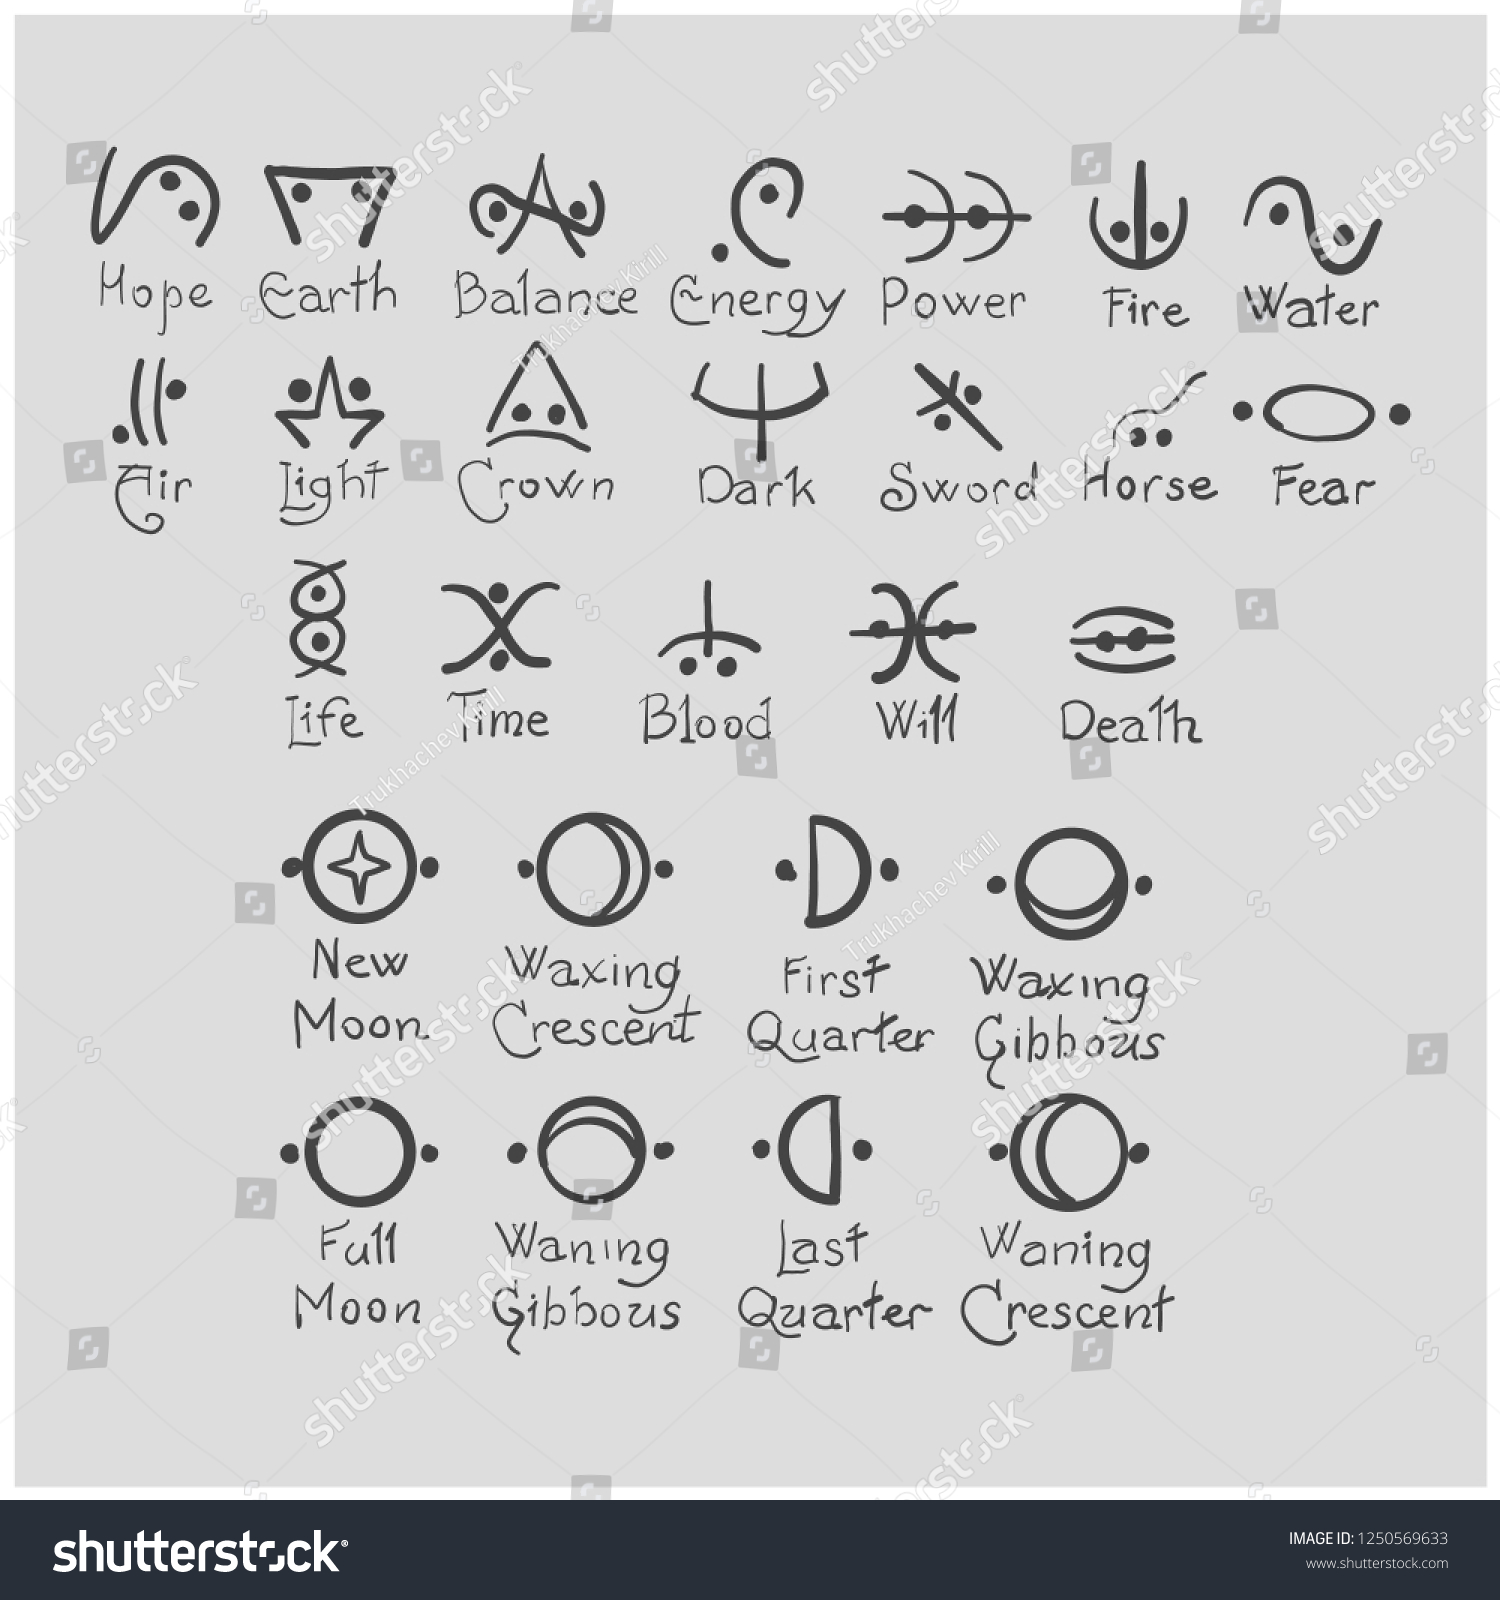 Witches Grimoire Sigils Symbols Meaning Wattpad のベクター画像素材 ロイヤリティフリー